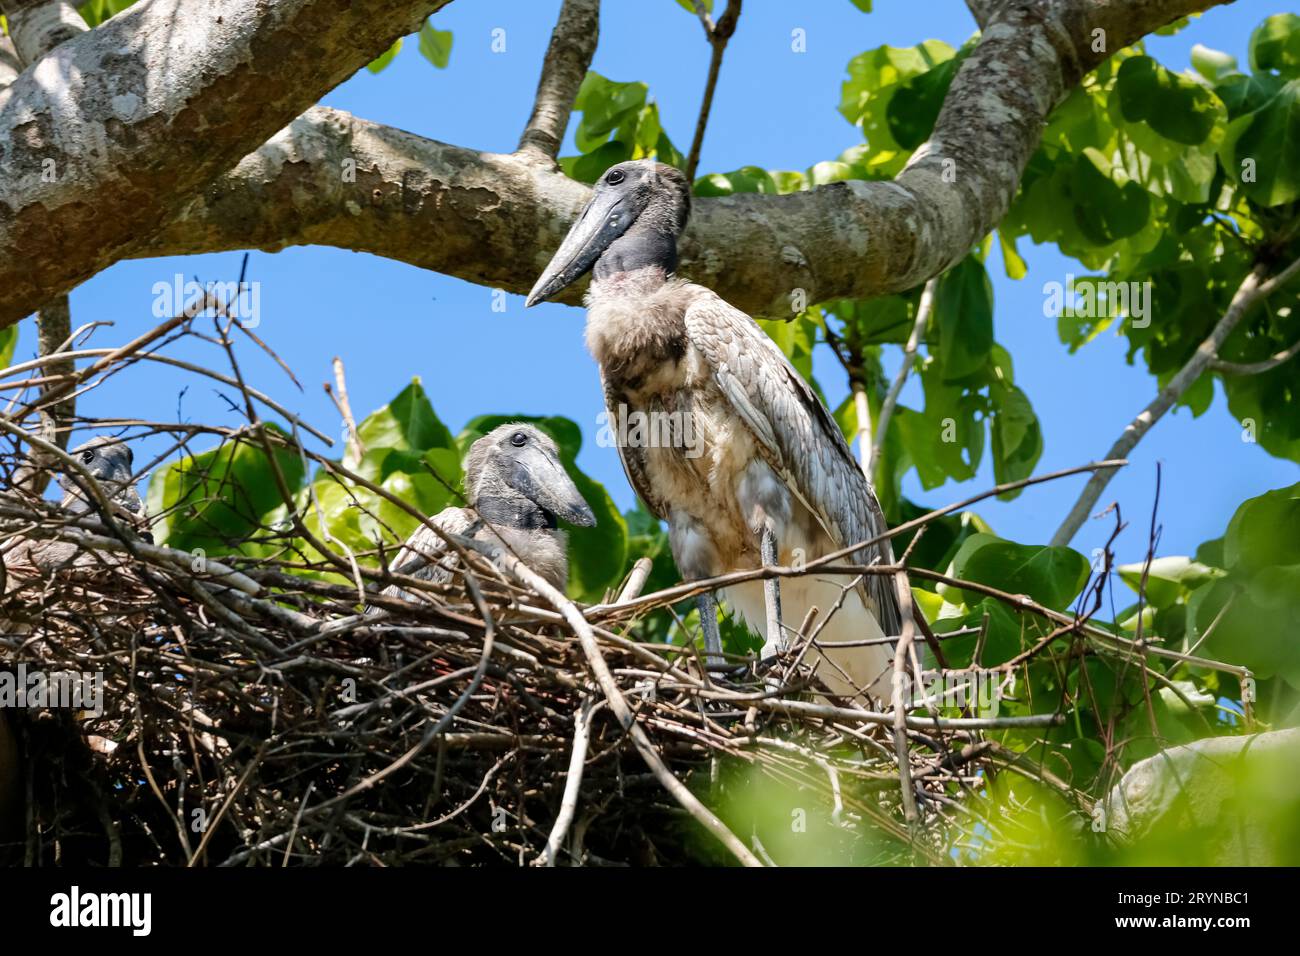 Zwei Jabiru-Störche nisten Störche, die in ihrem Nest in einem grünen Baum sitzen, Pantanal Feuchtgebiete, Brasilien Stockfoto